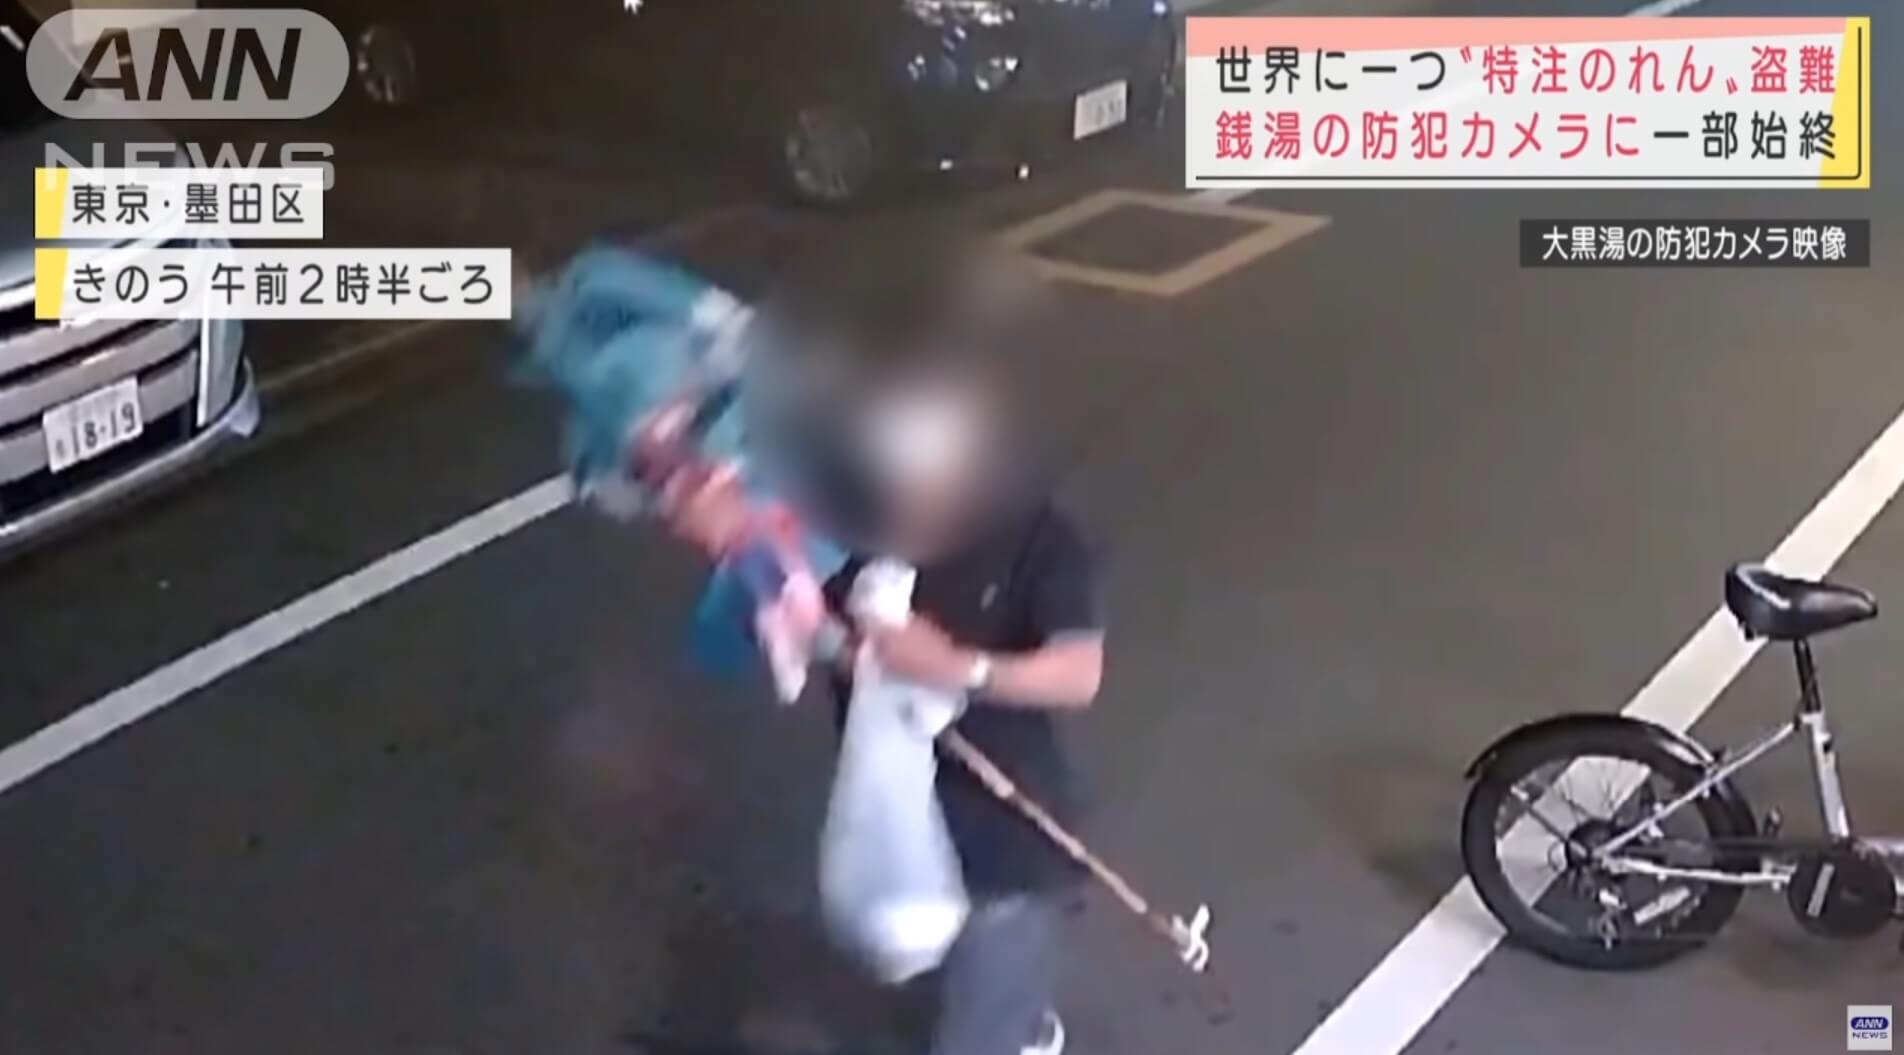 Homem rouba cortina anime e desaparece em Tóquio